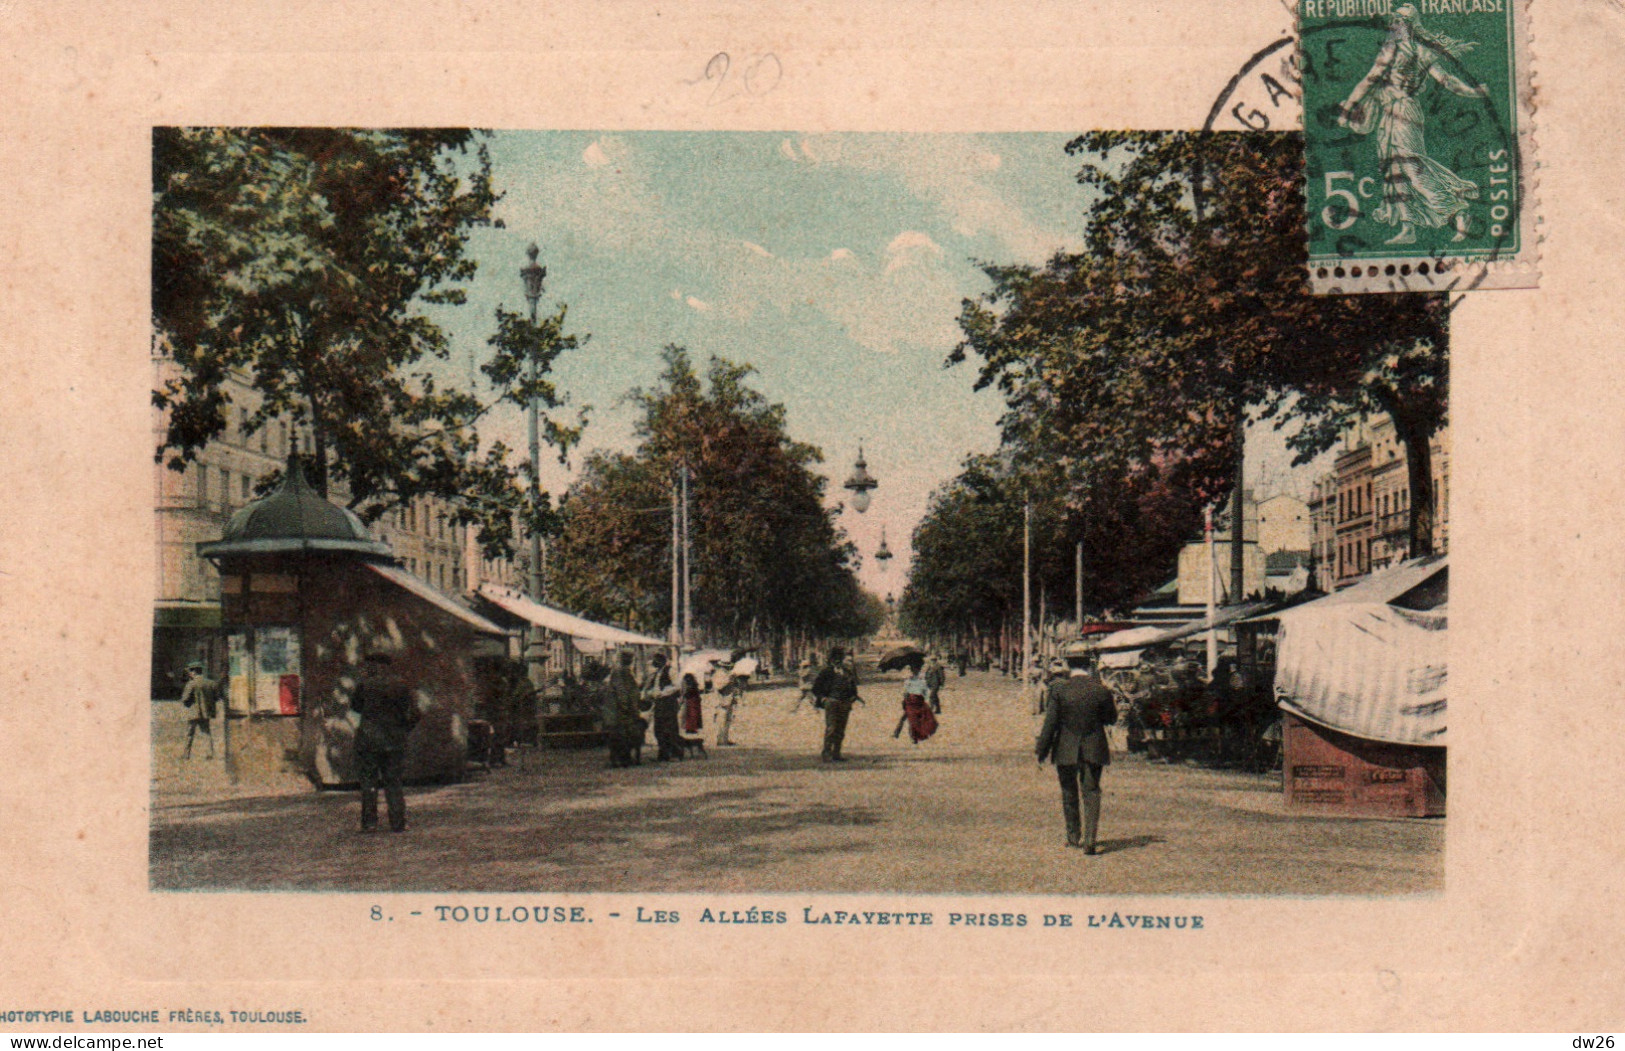 Toulouse (Haute-Garonne) Les Allées Lafayette Prises De L'Avenue - Phototypie Labouche - Carte L.F. Colorisée N° 8 - Toulouse